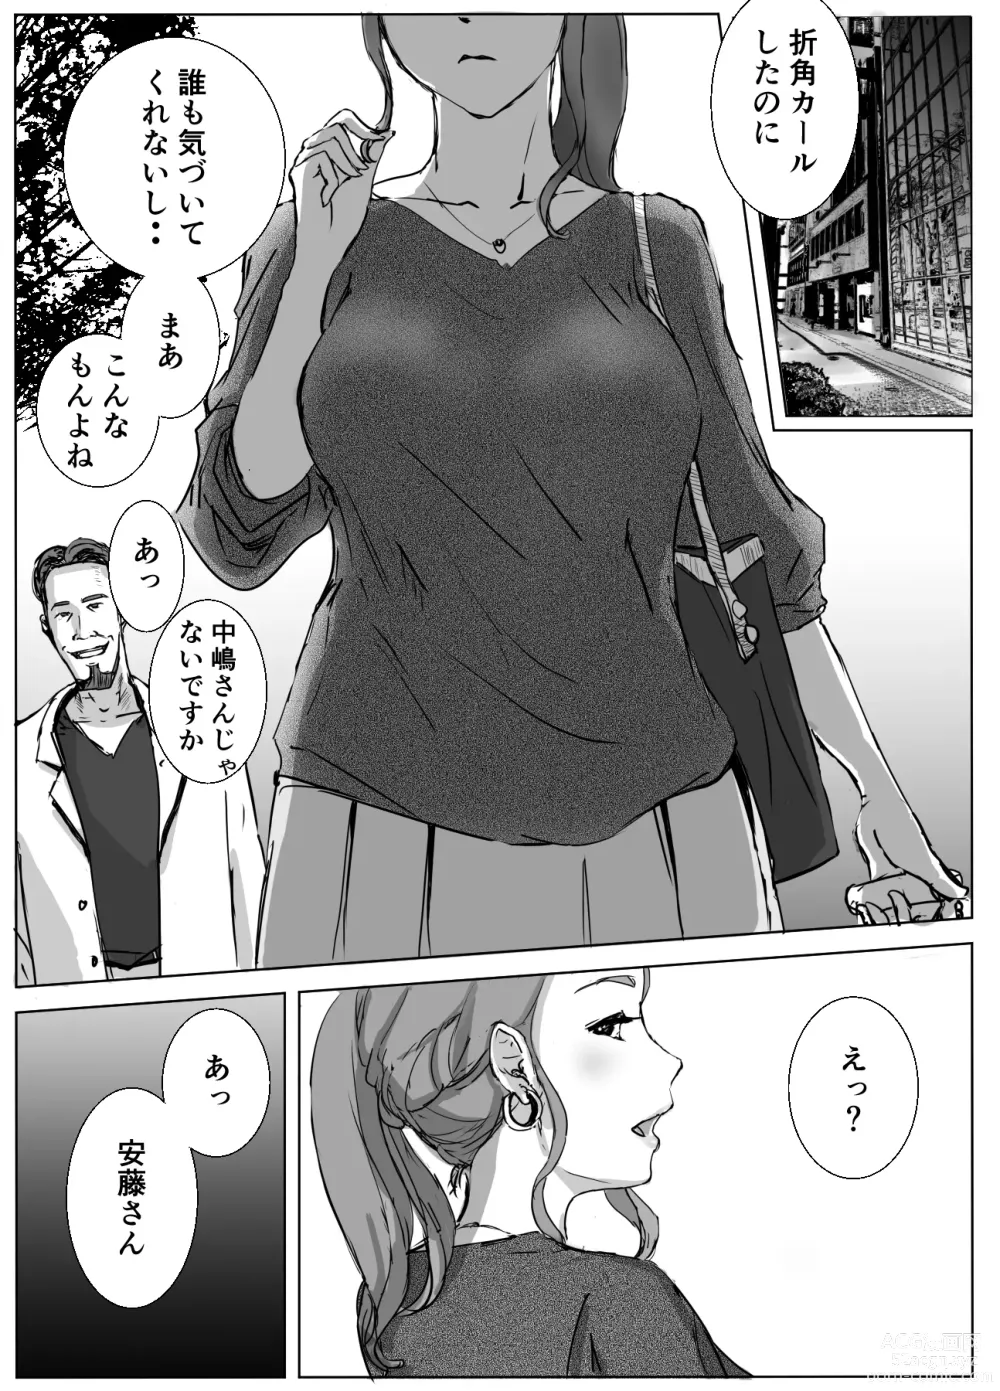 Page 3 of doujinshi Ano Hi no Uso 4 Rina Mama ~Hitomi~ 1-nen Mae no Dekigoto